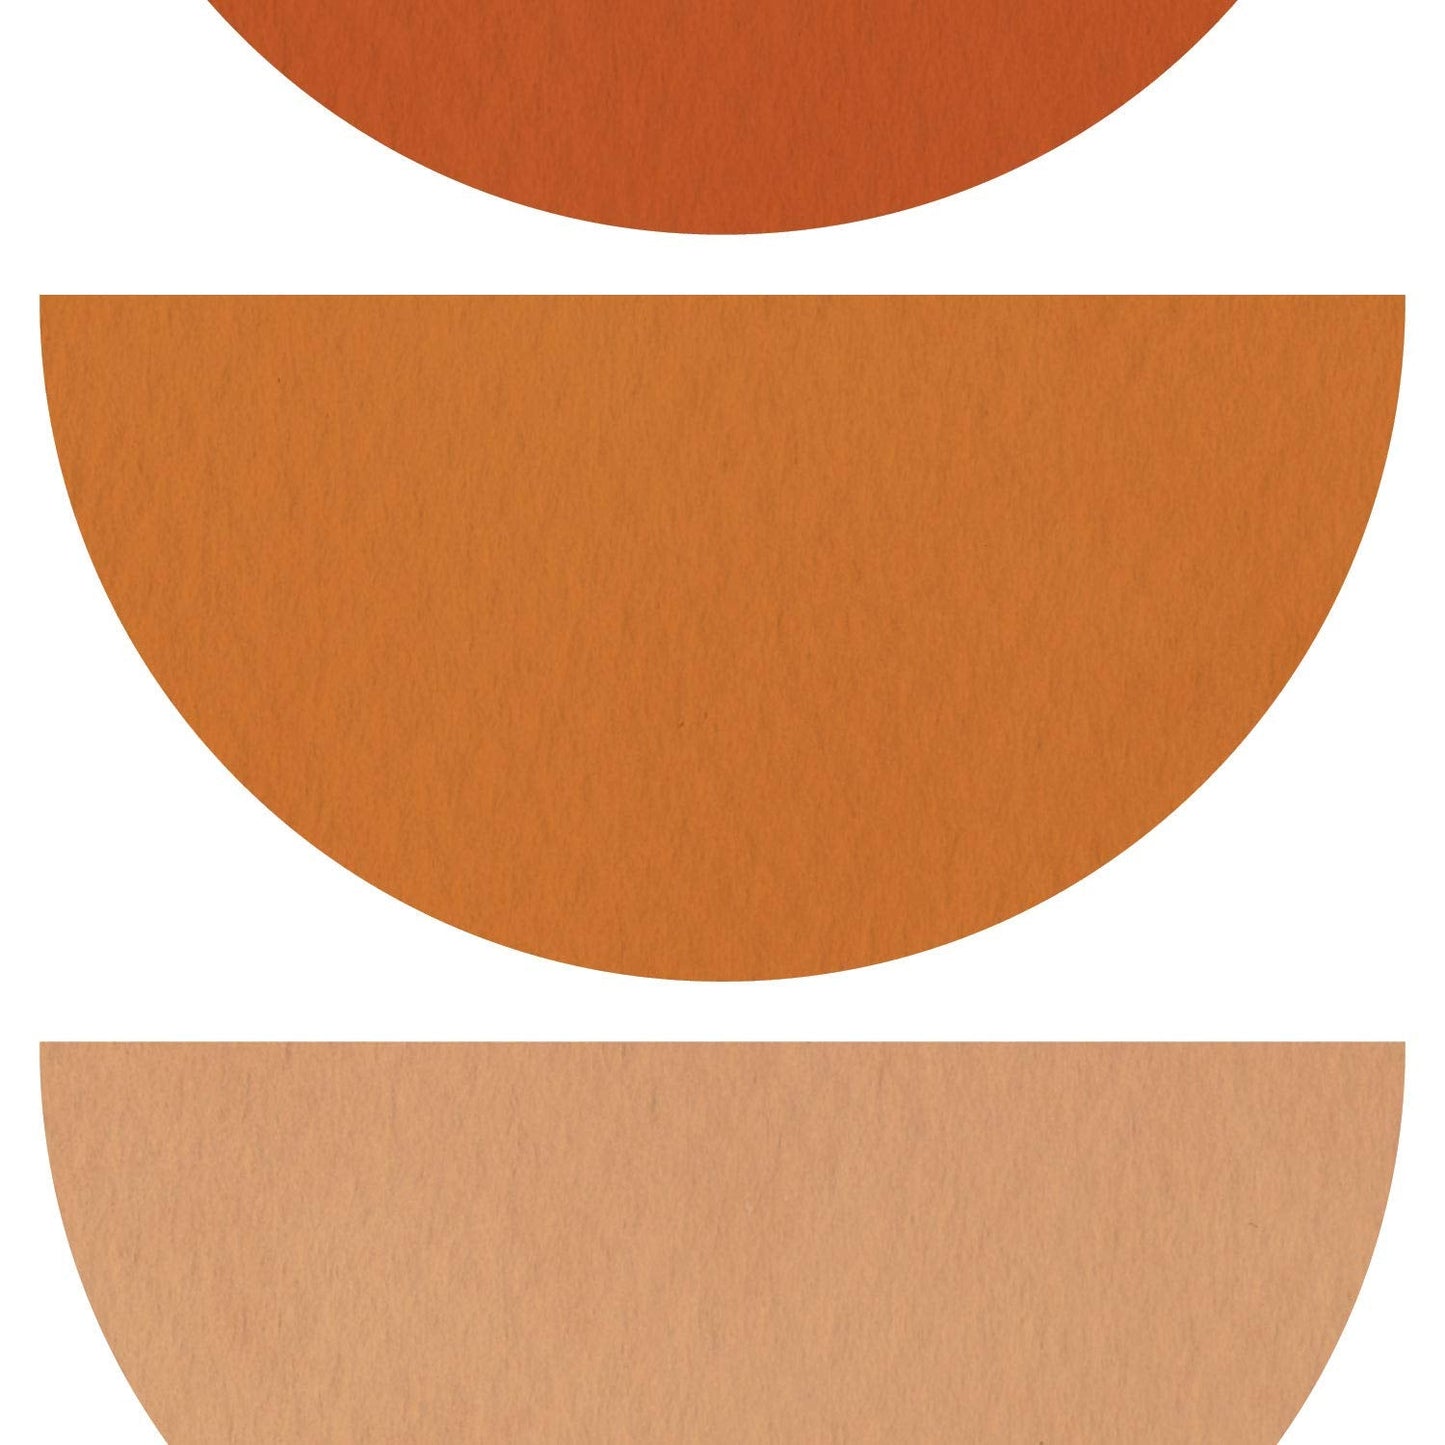 Set de cuatro láminas con diseños coloridos basados en Marruecos. Pack de láminas 'Paramo' diseño minimalista.-Artwork-Nacnic-Nacnic Estudio SL